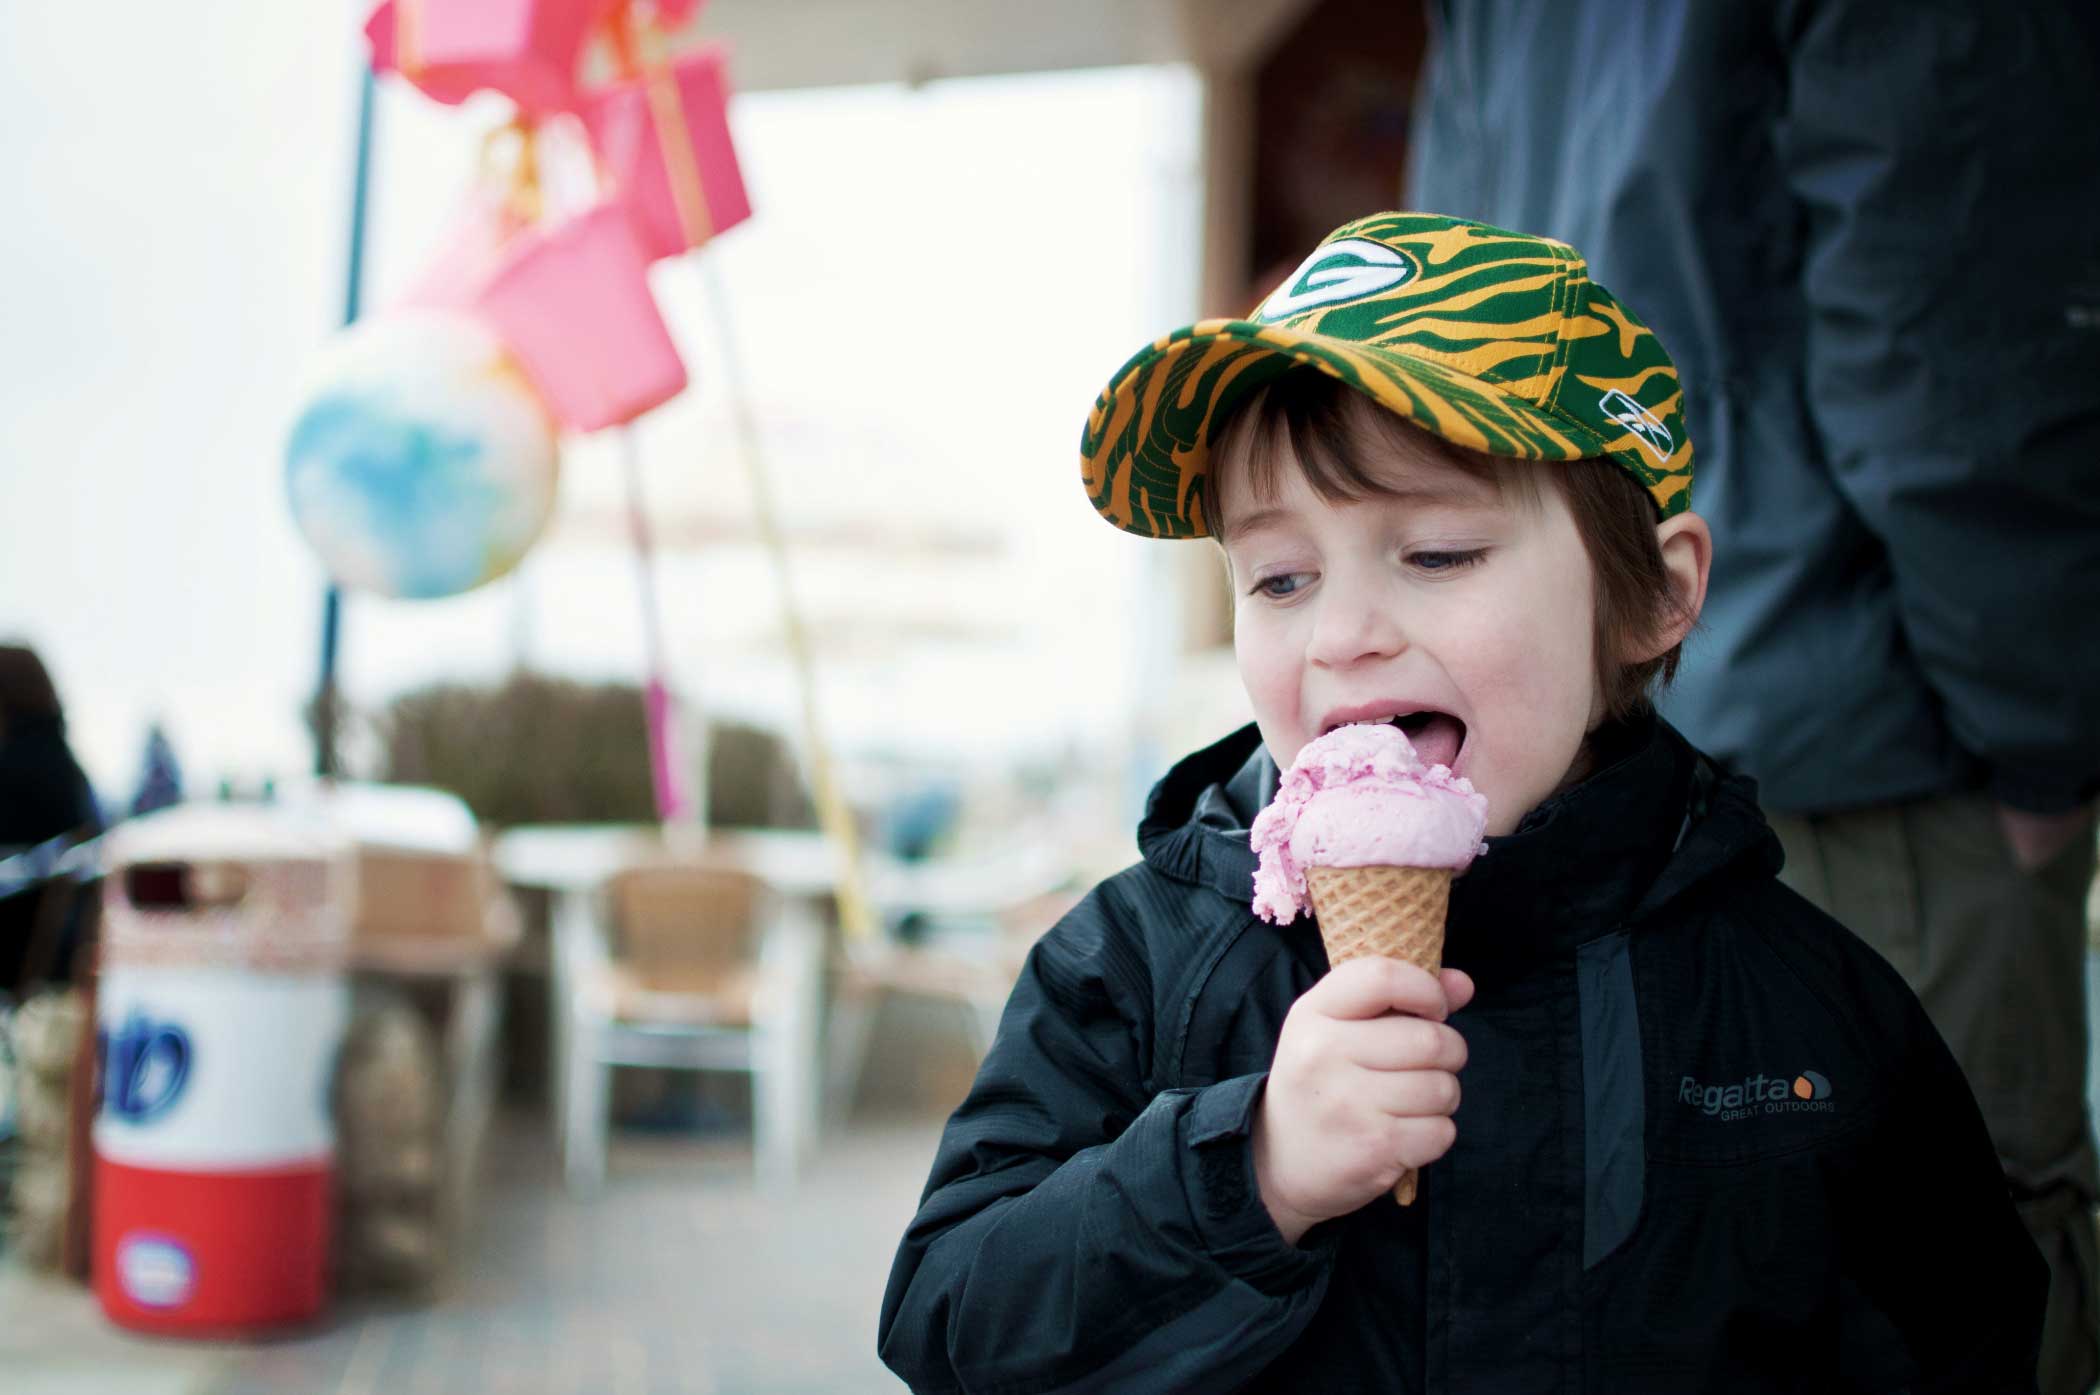 مصرف شیرینی در کودکان باعث بیش فعالی می شود؟